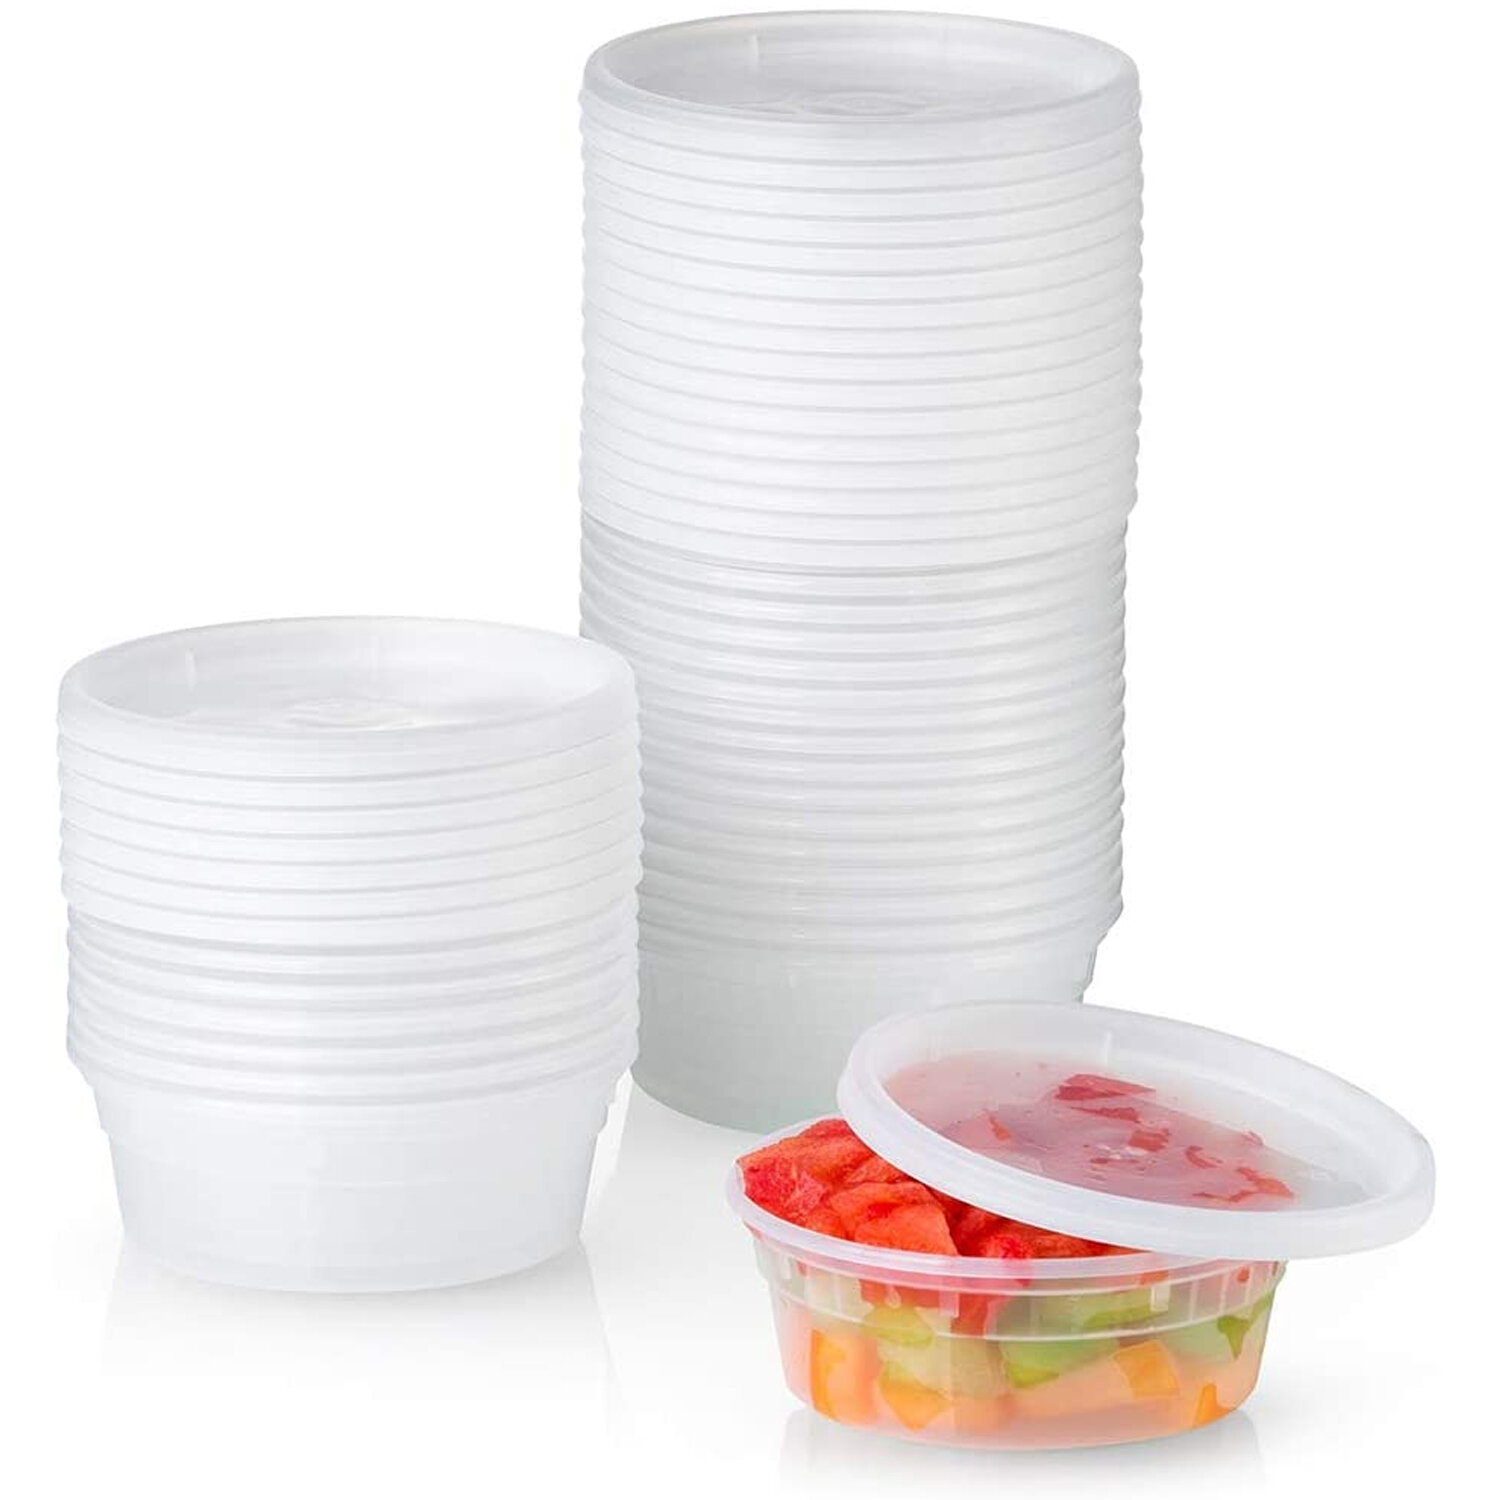 Prep & Savour 8 oz Reusable Plastic Deli Containers & Reviews